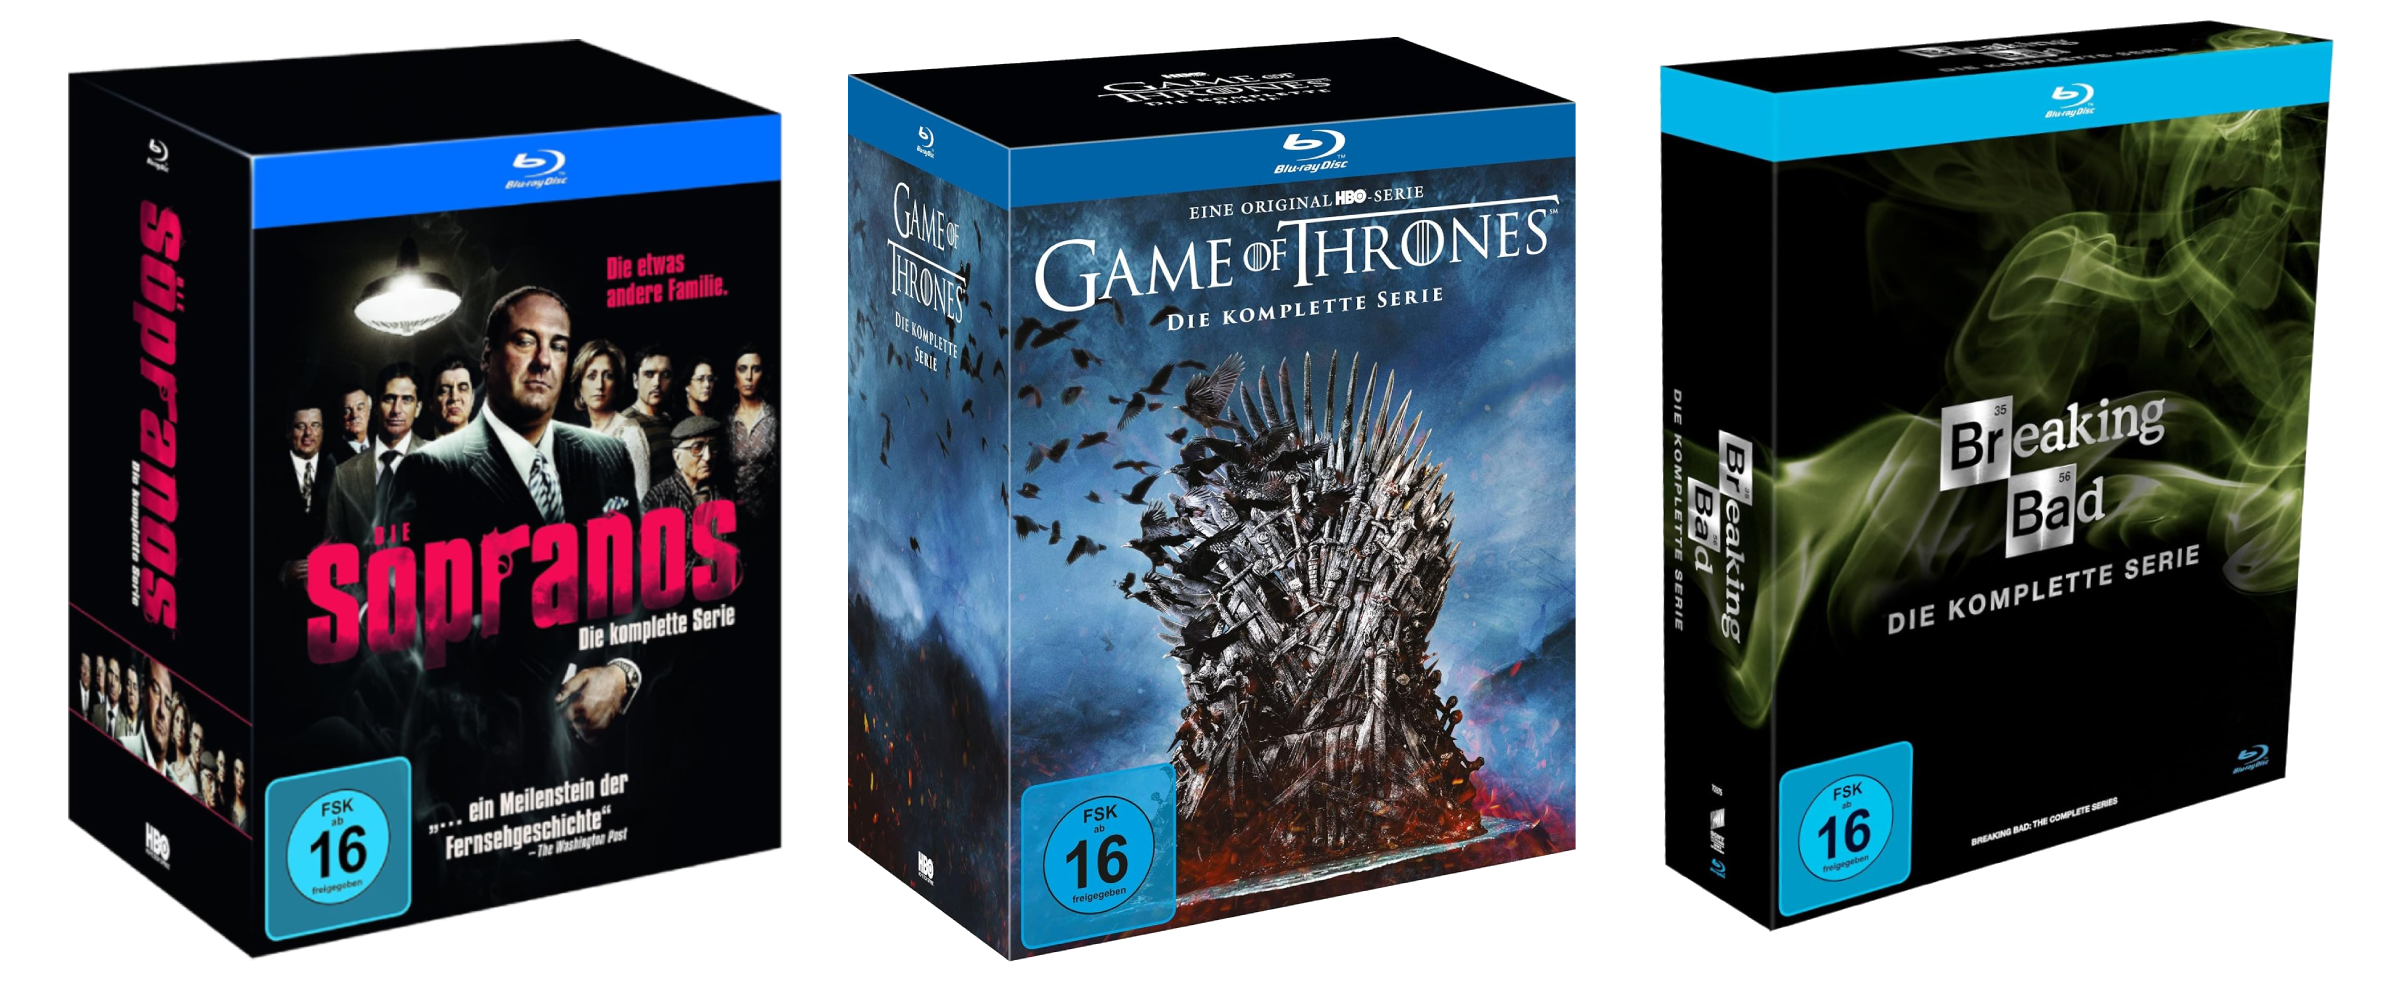 Blu-ray-Boxsets der Serien Sopranos, Game of Thrones und Breaking Bad